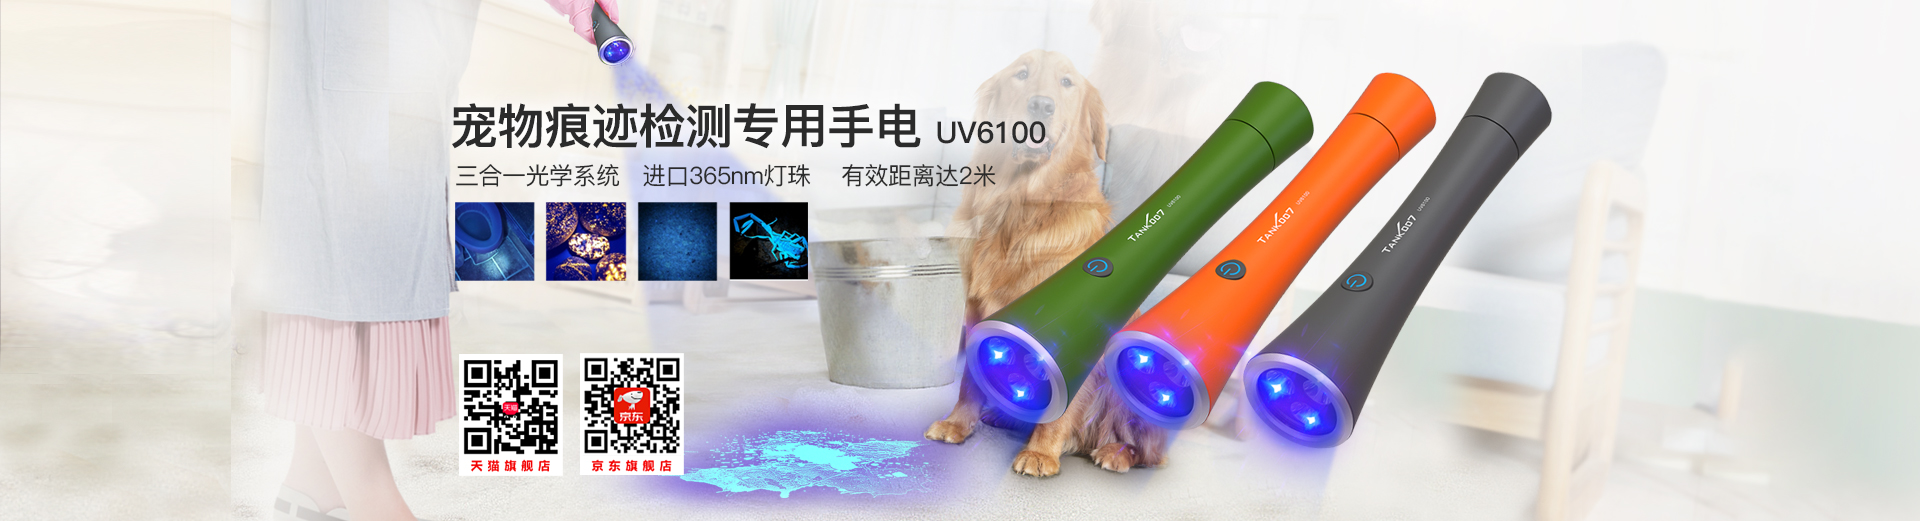 UV300紫外線消毒燈